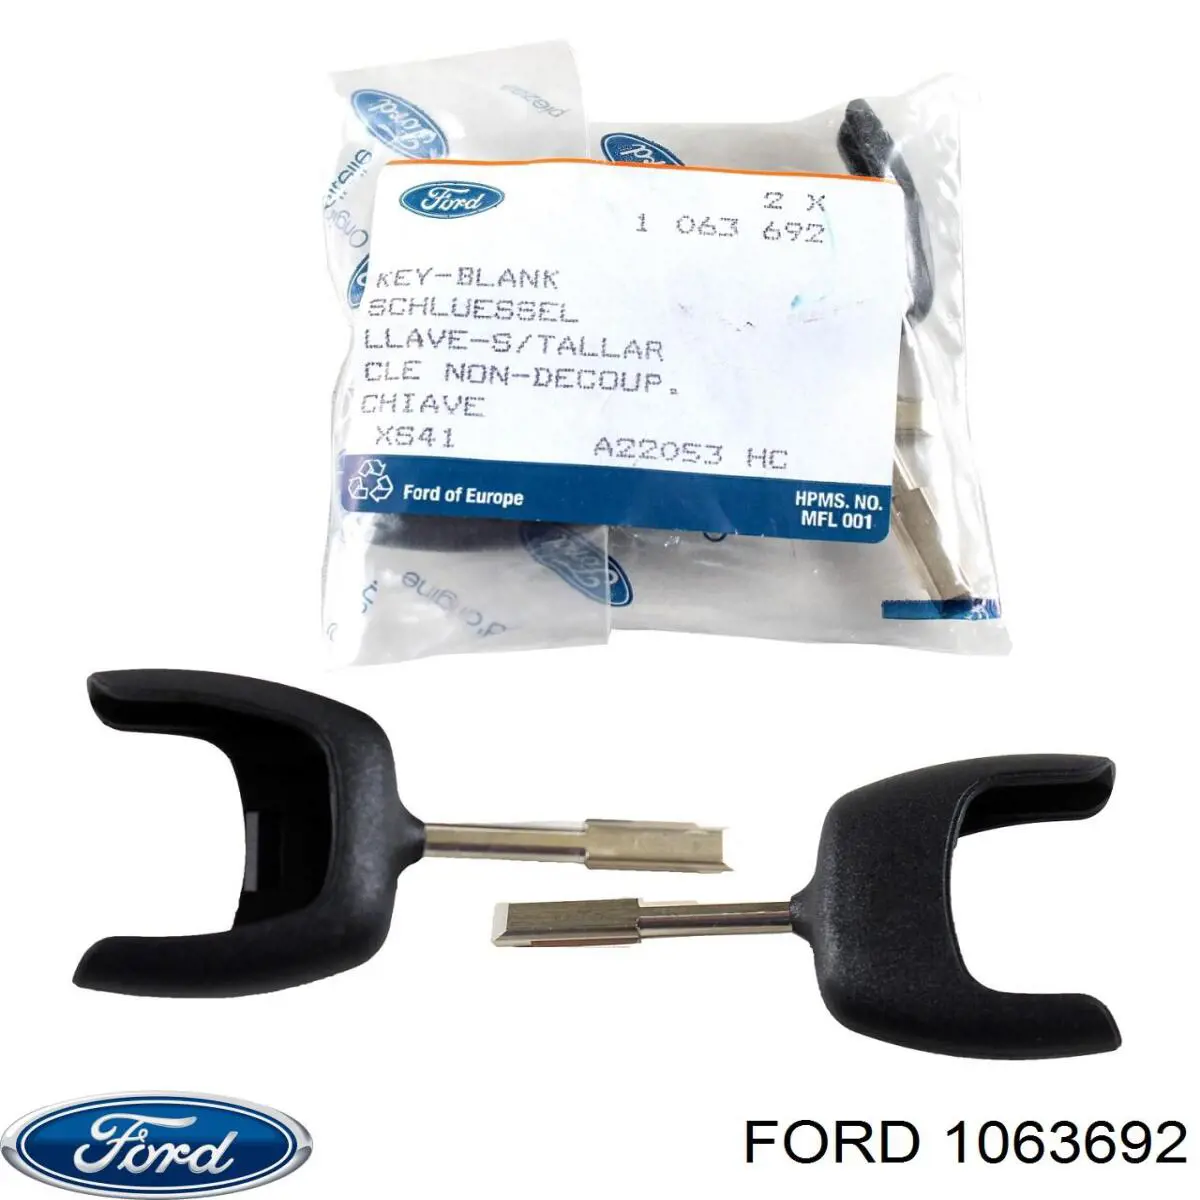 Ключ-заготовка на Ford Focus III 